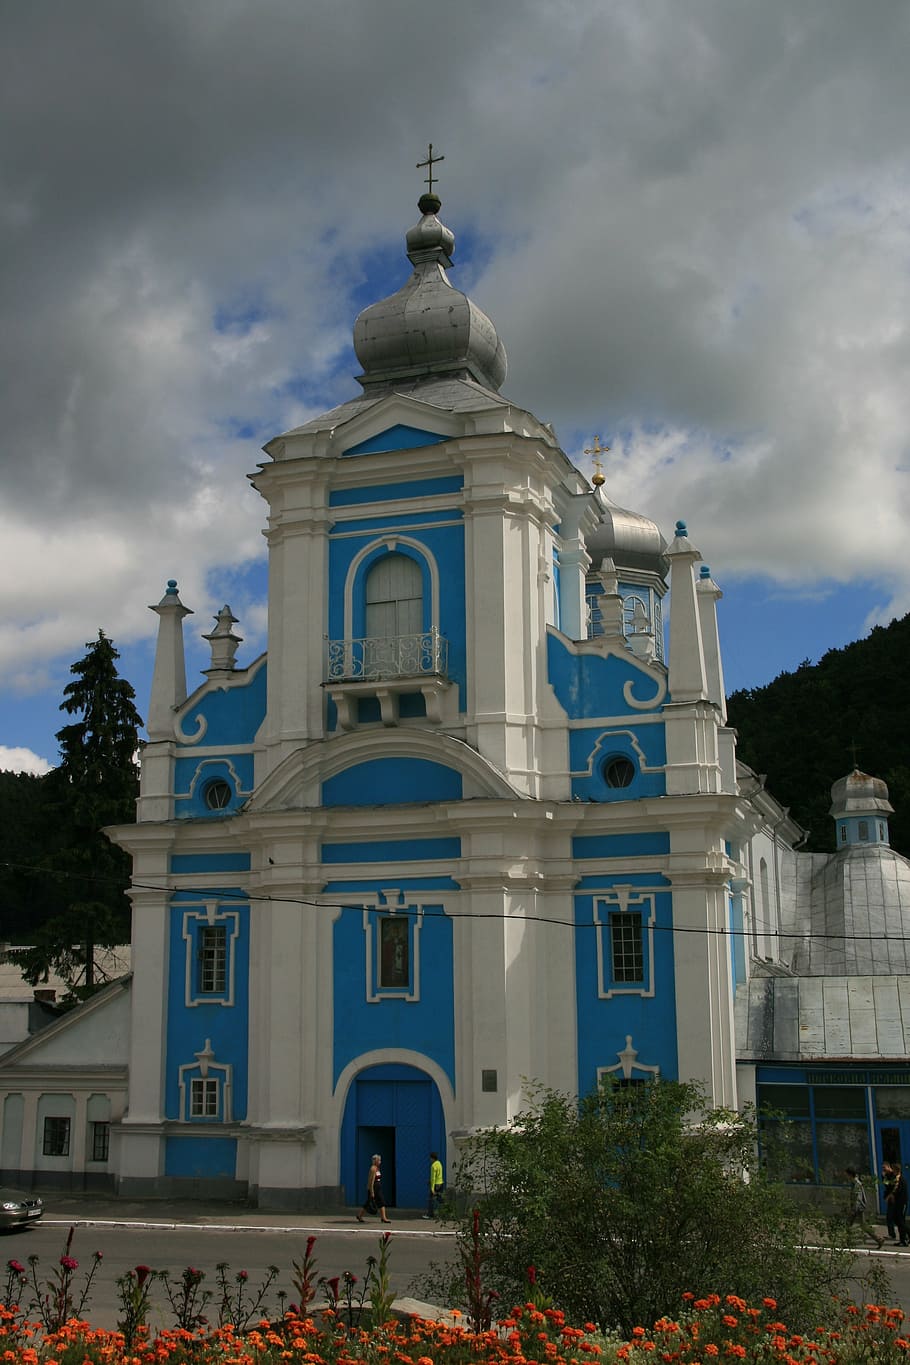 church of st nicholas, nicholas, krzemieniec, ukraine, built structure, architecture, building exterior, cloud - sky, sky, religion